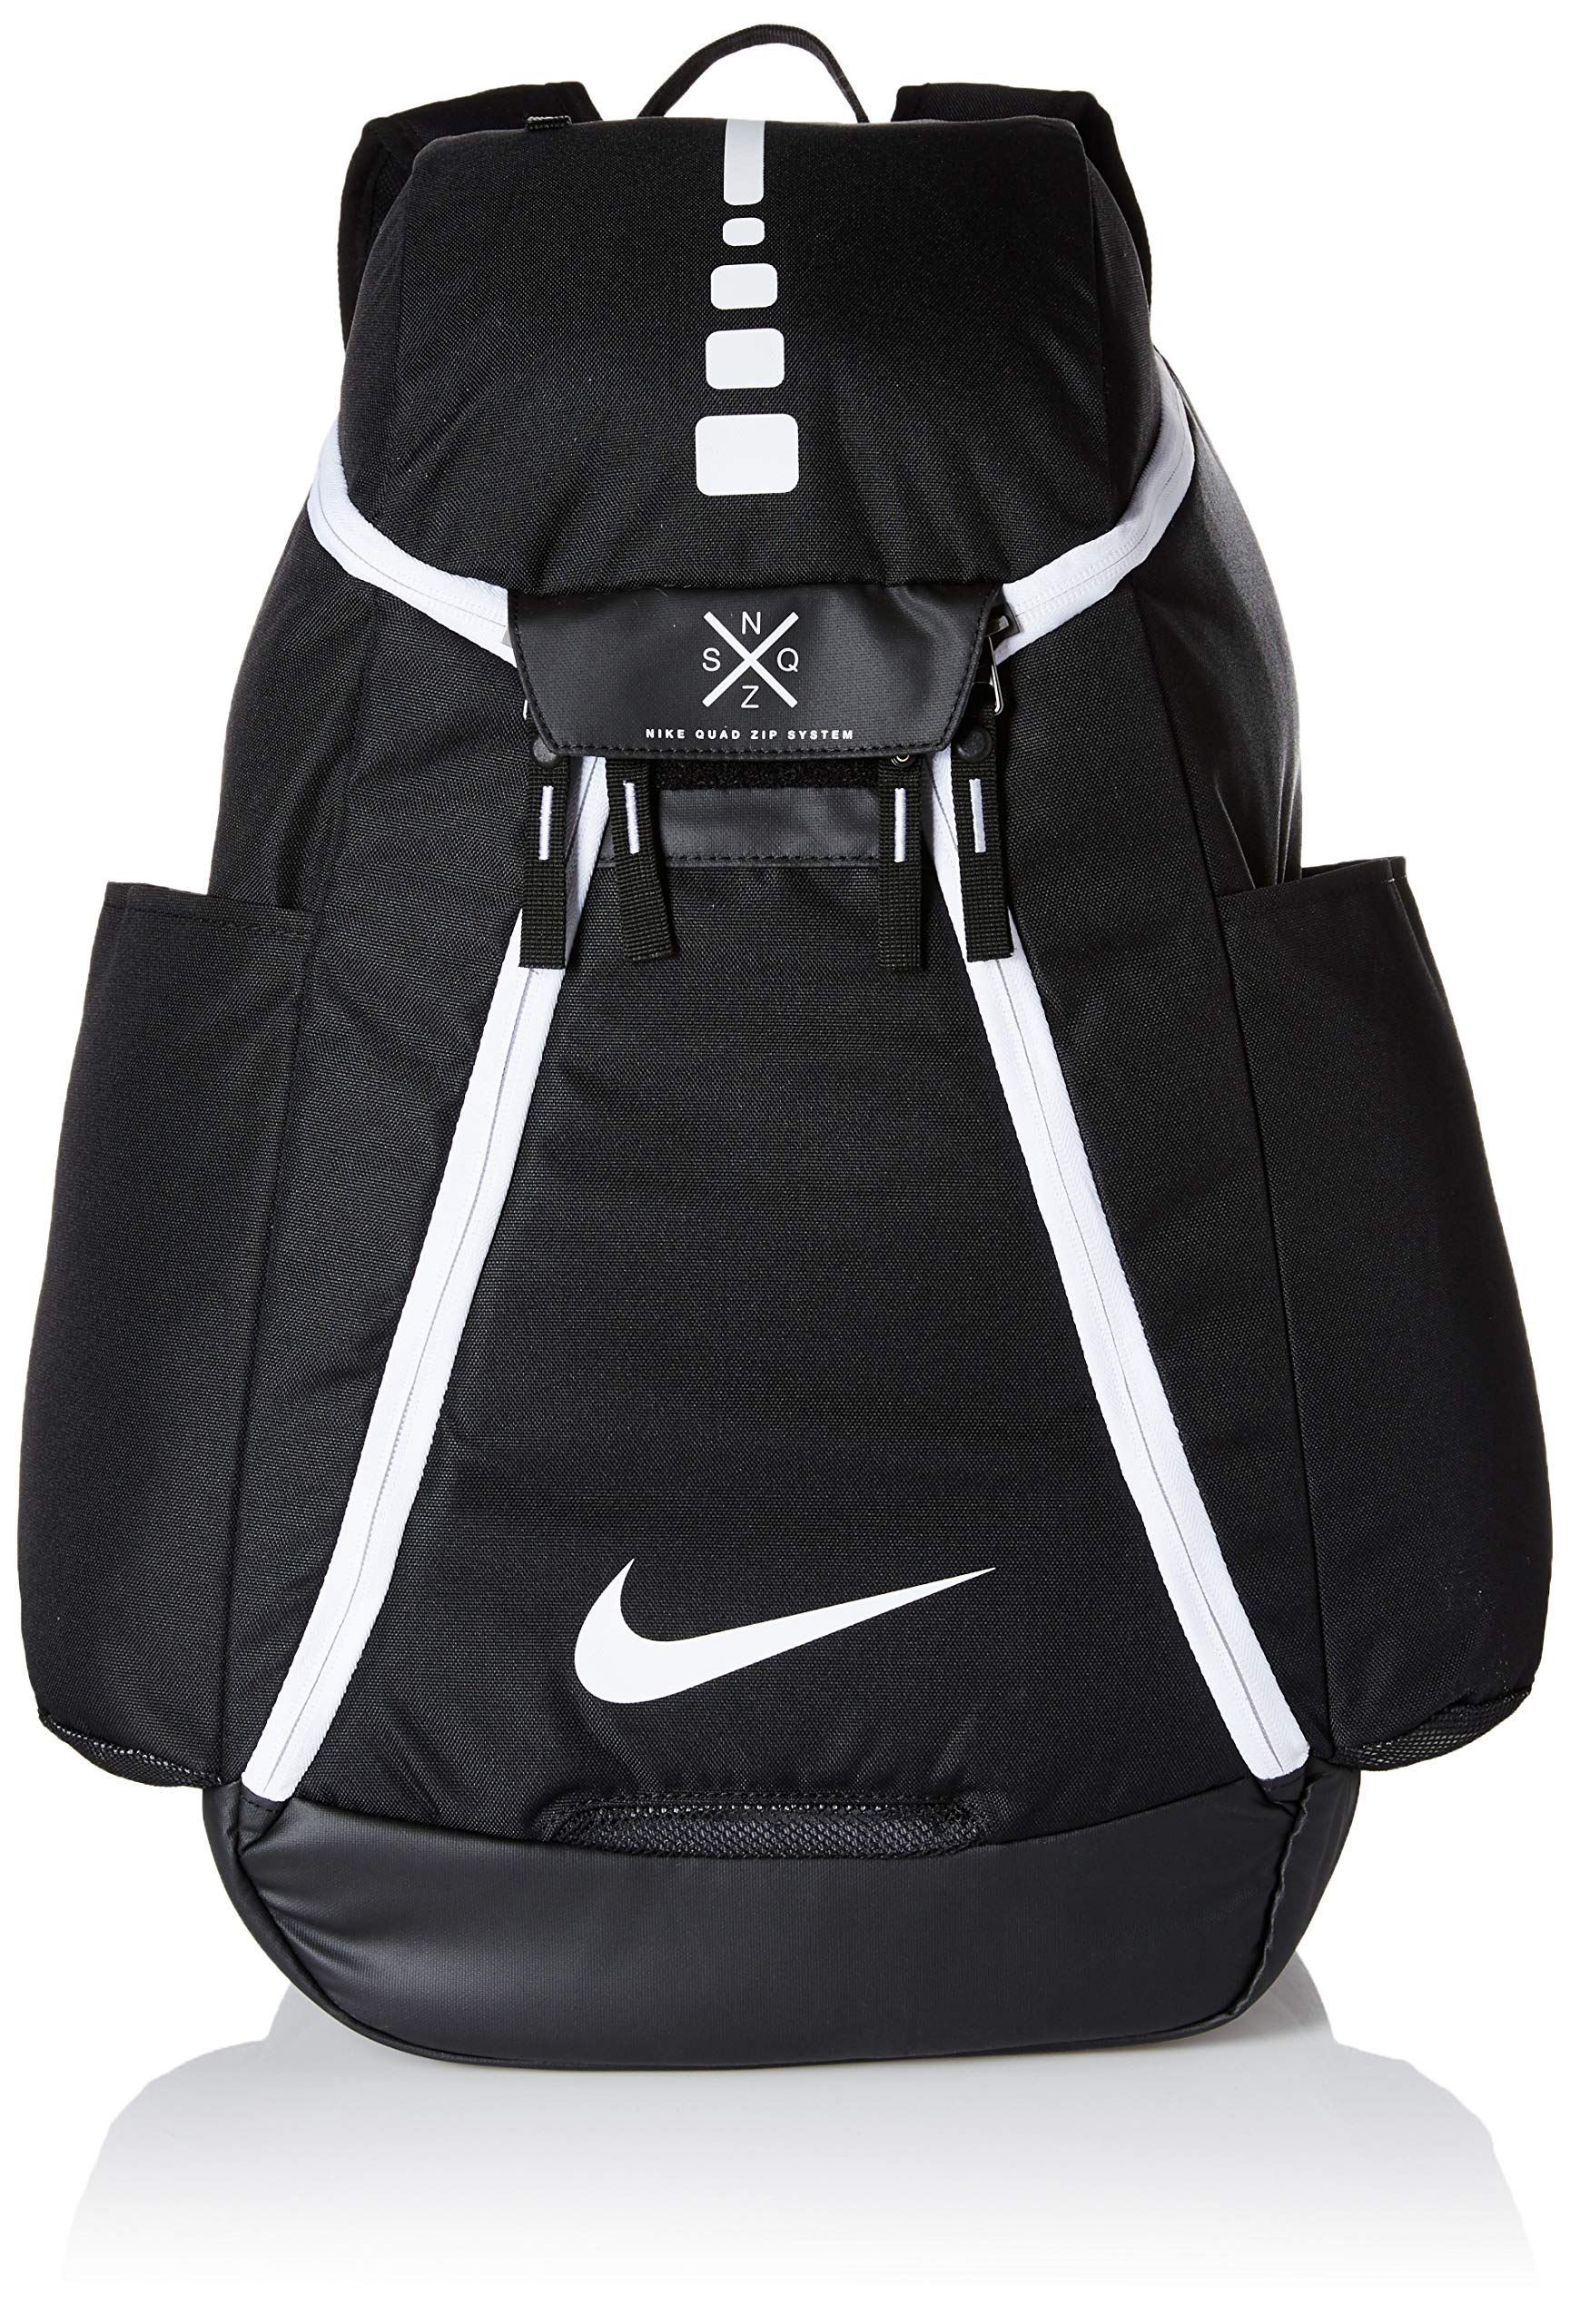 Alsjeblieft kijk Buurt toewijzen Nike Hoops Elite Max Air Team 2.0 Backpack– backpacks4less.com